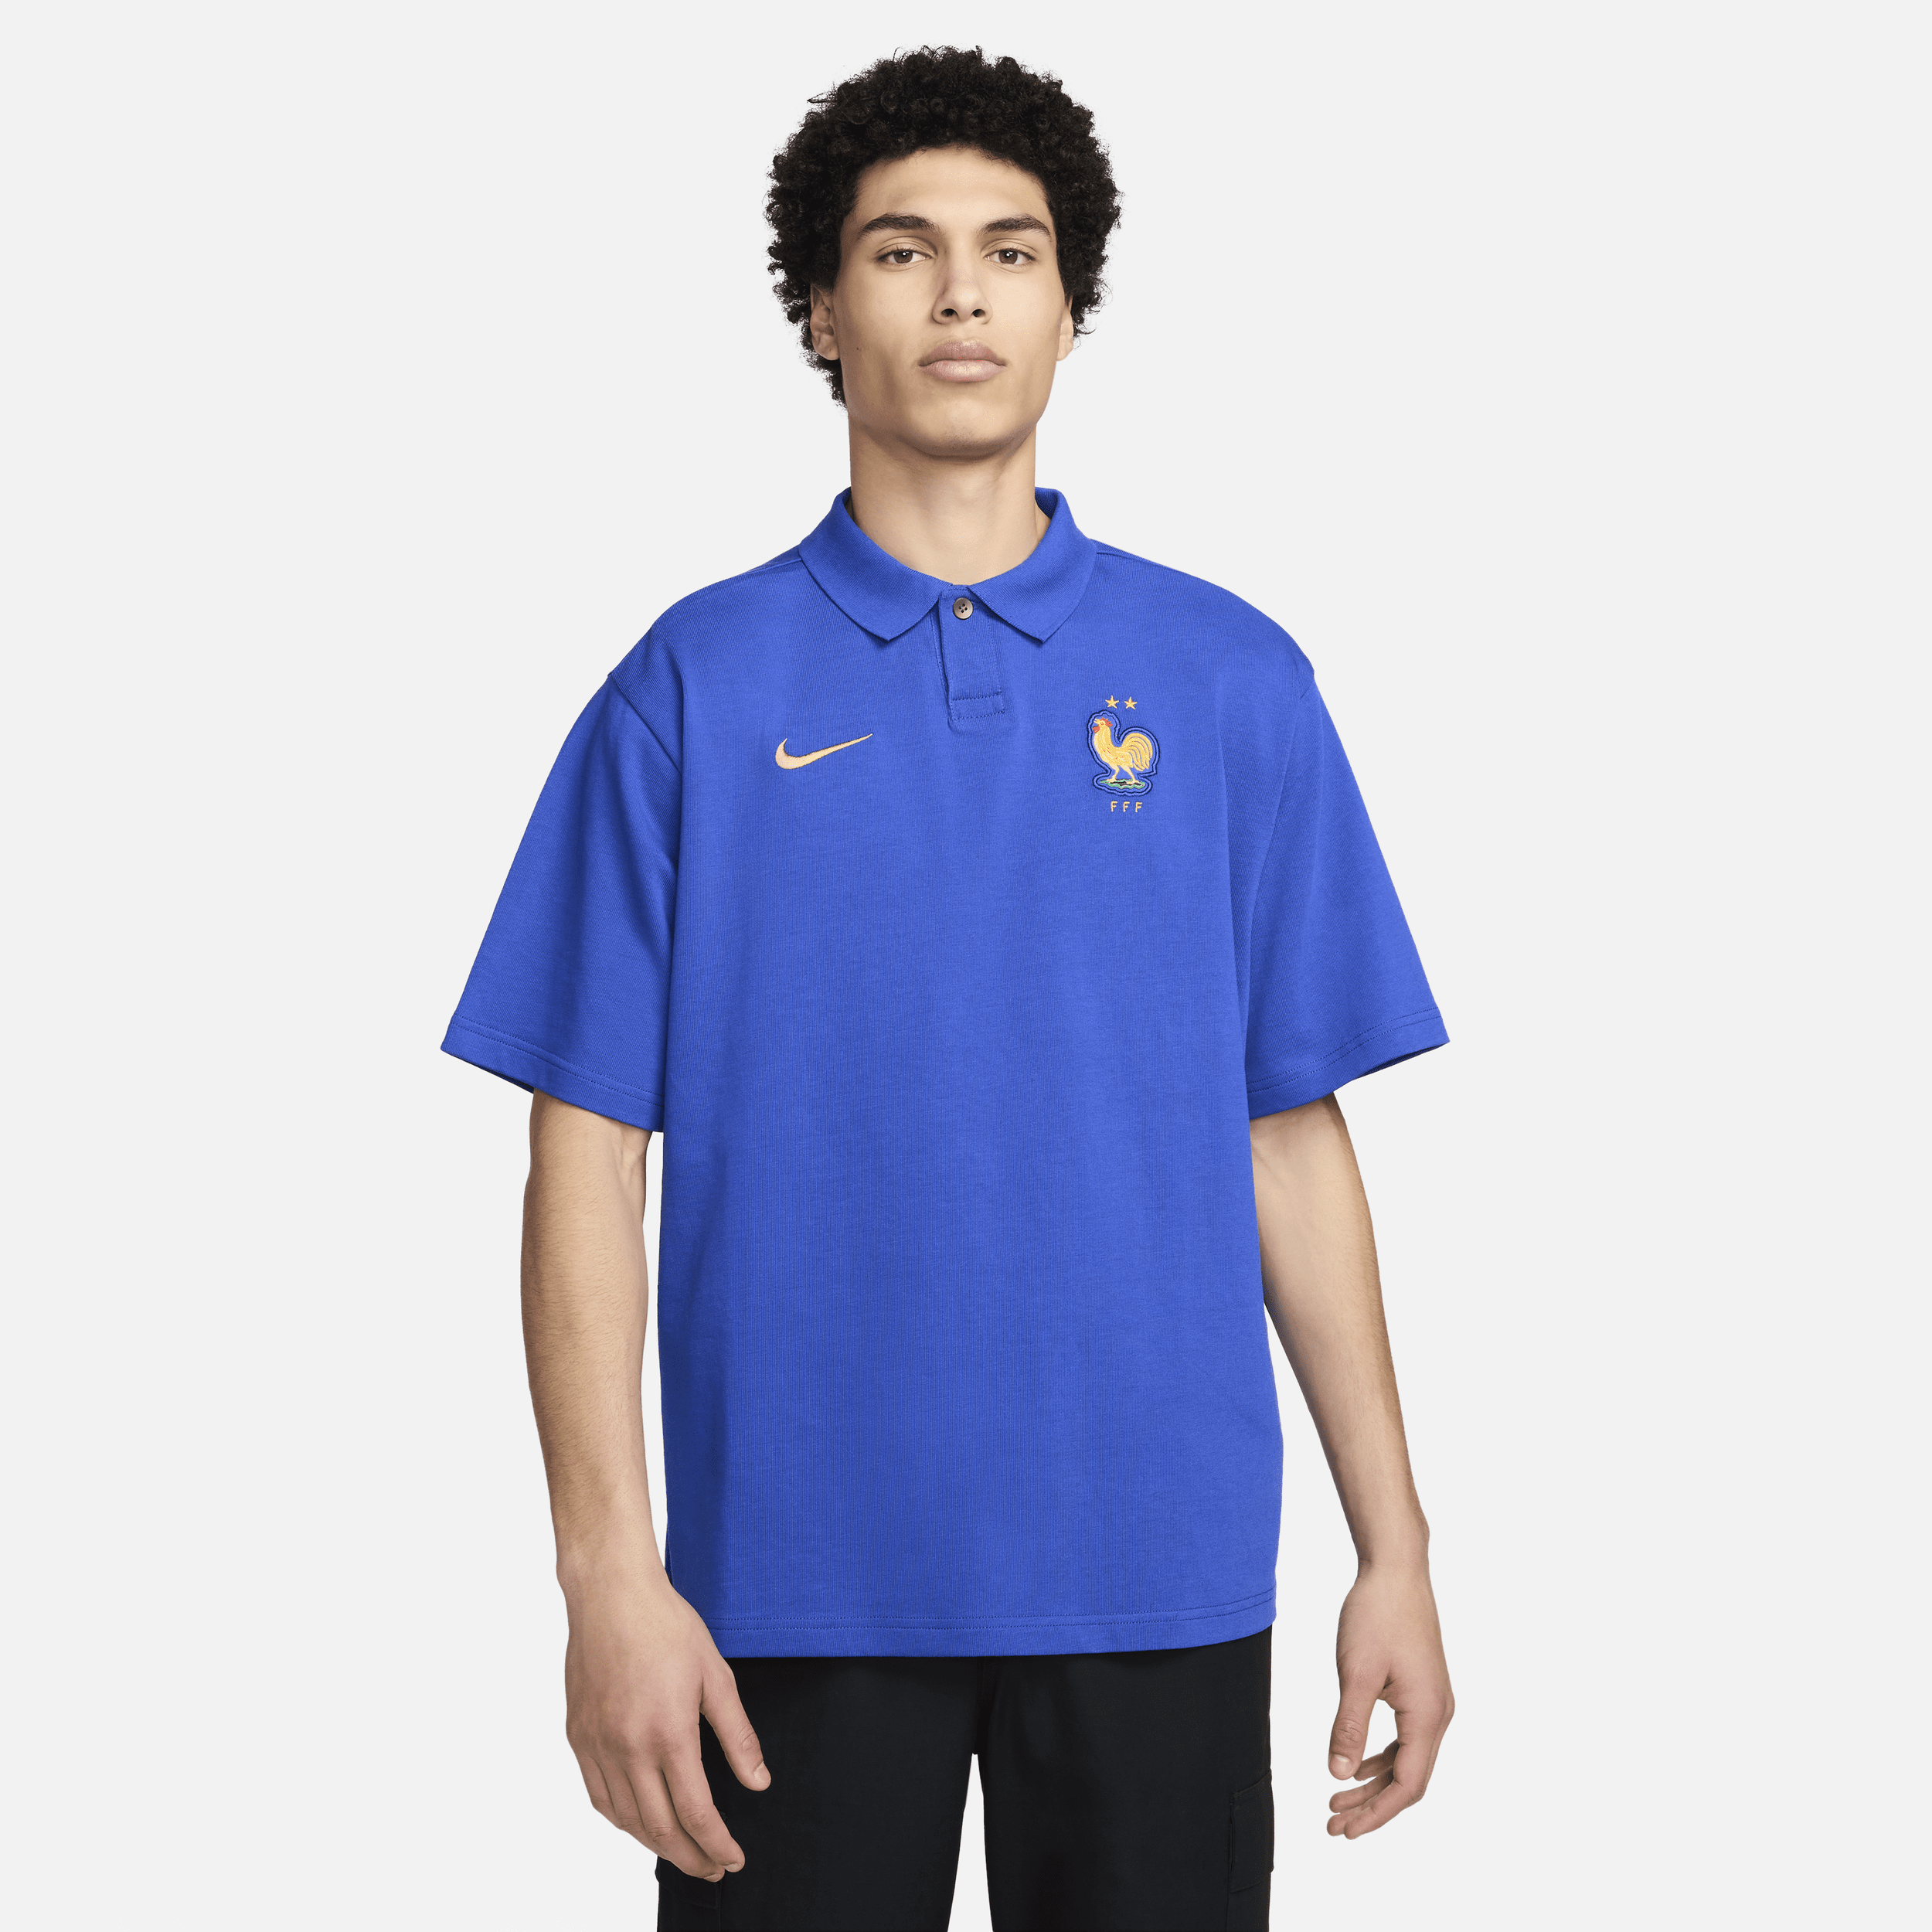 Nike FFF oversized voetbalpoloshirt voor heren Blauw